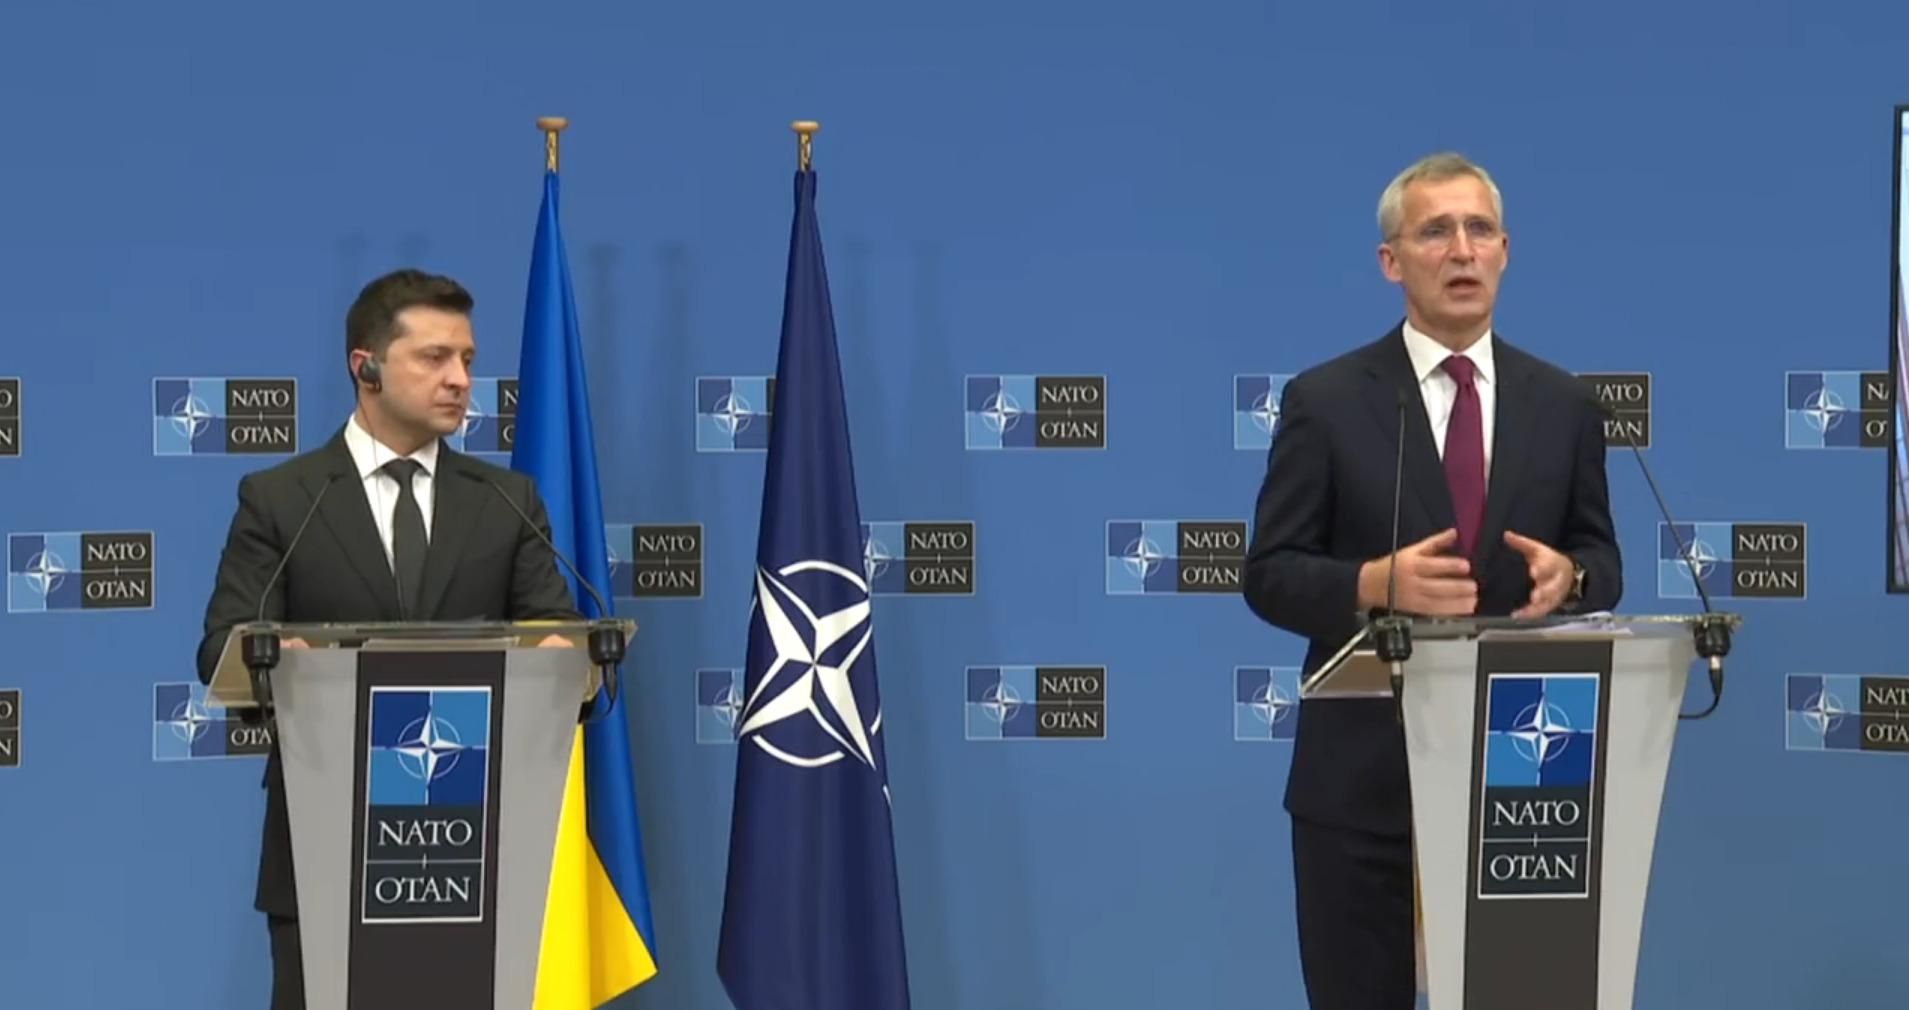 Диалог с Россией нужен, но компромиссов с Кремлем насчет Украины в НАТО не будет, – Столтенберг